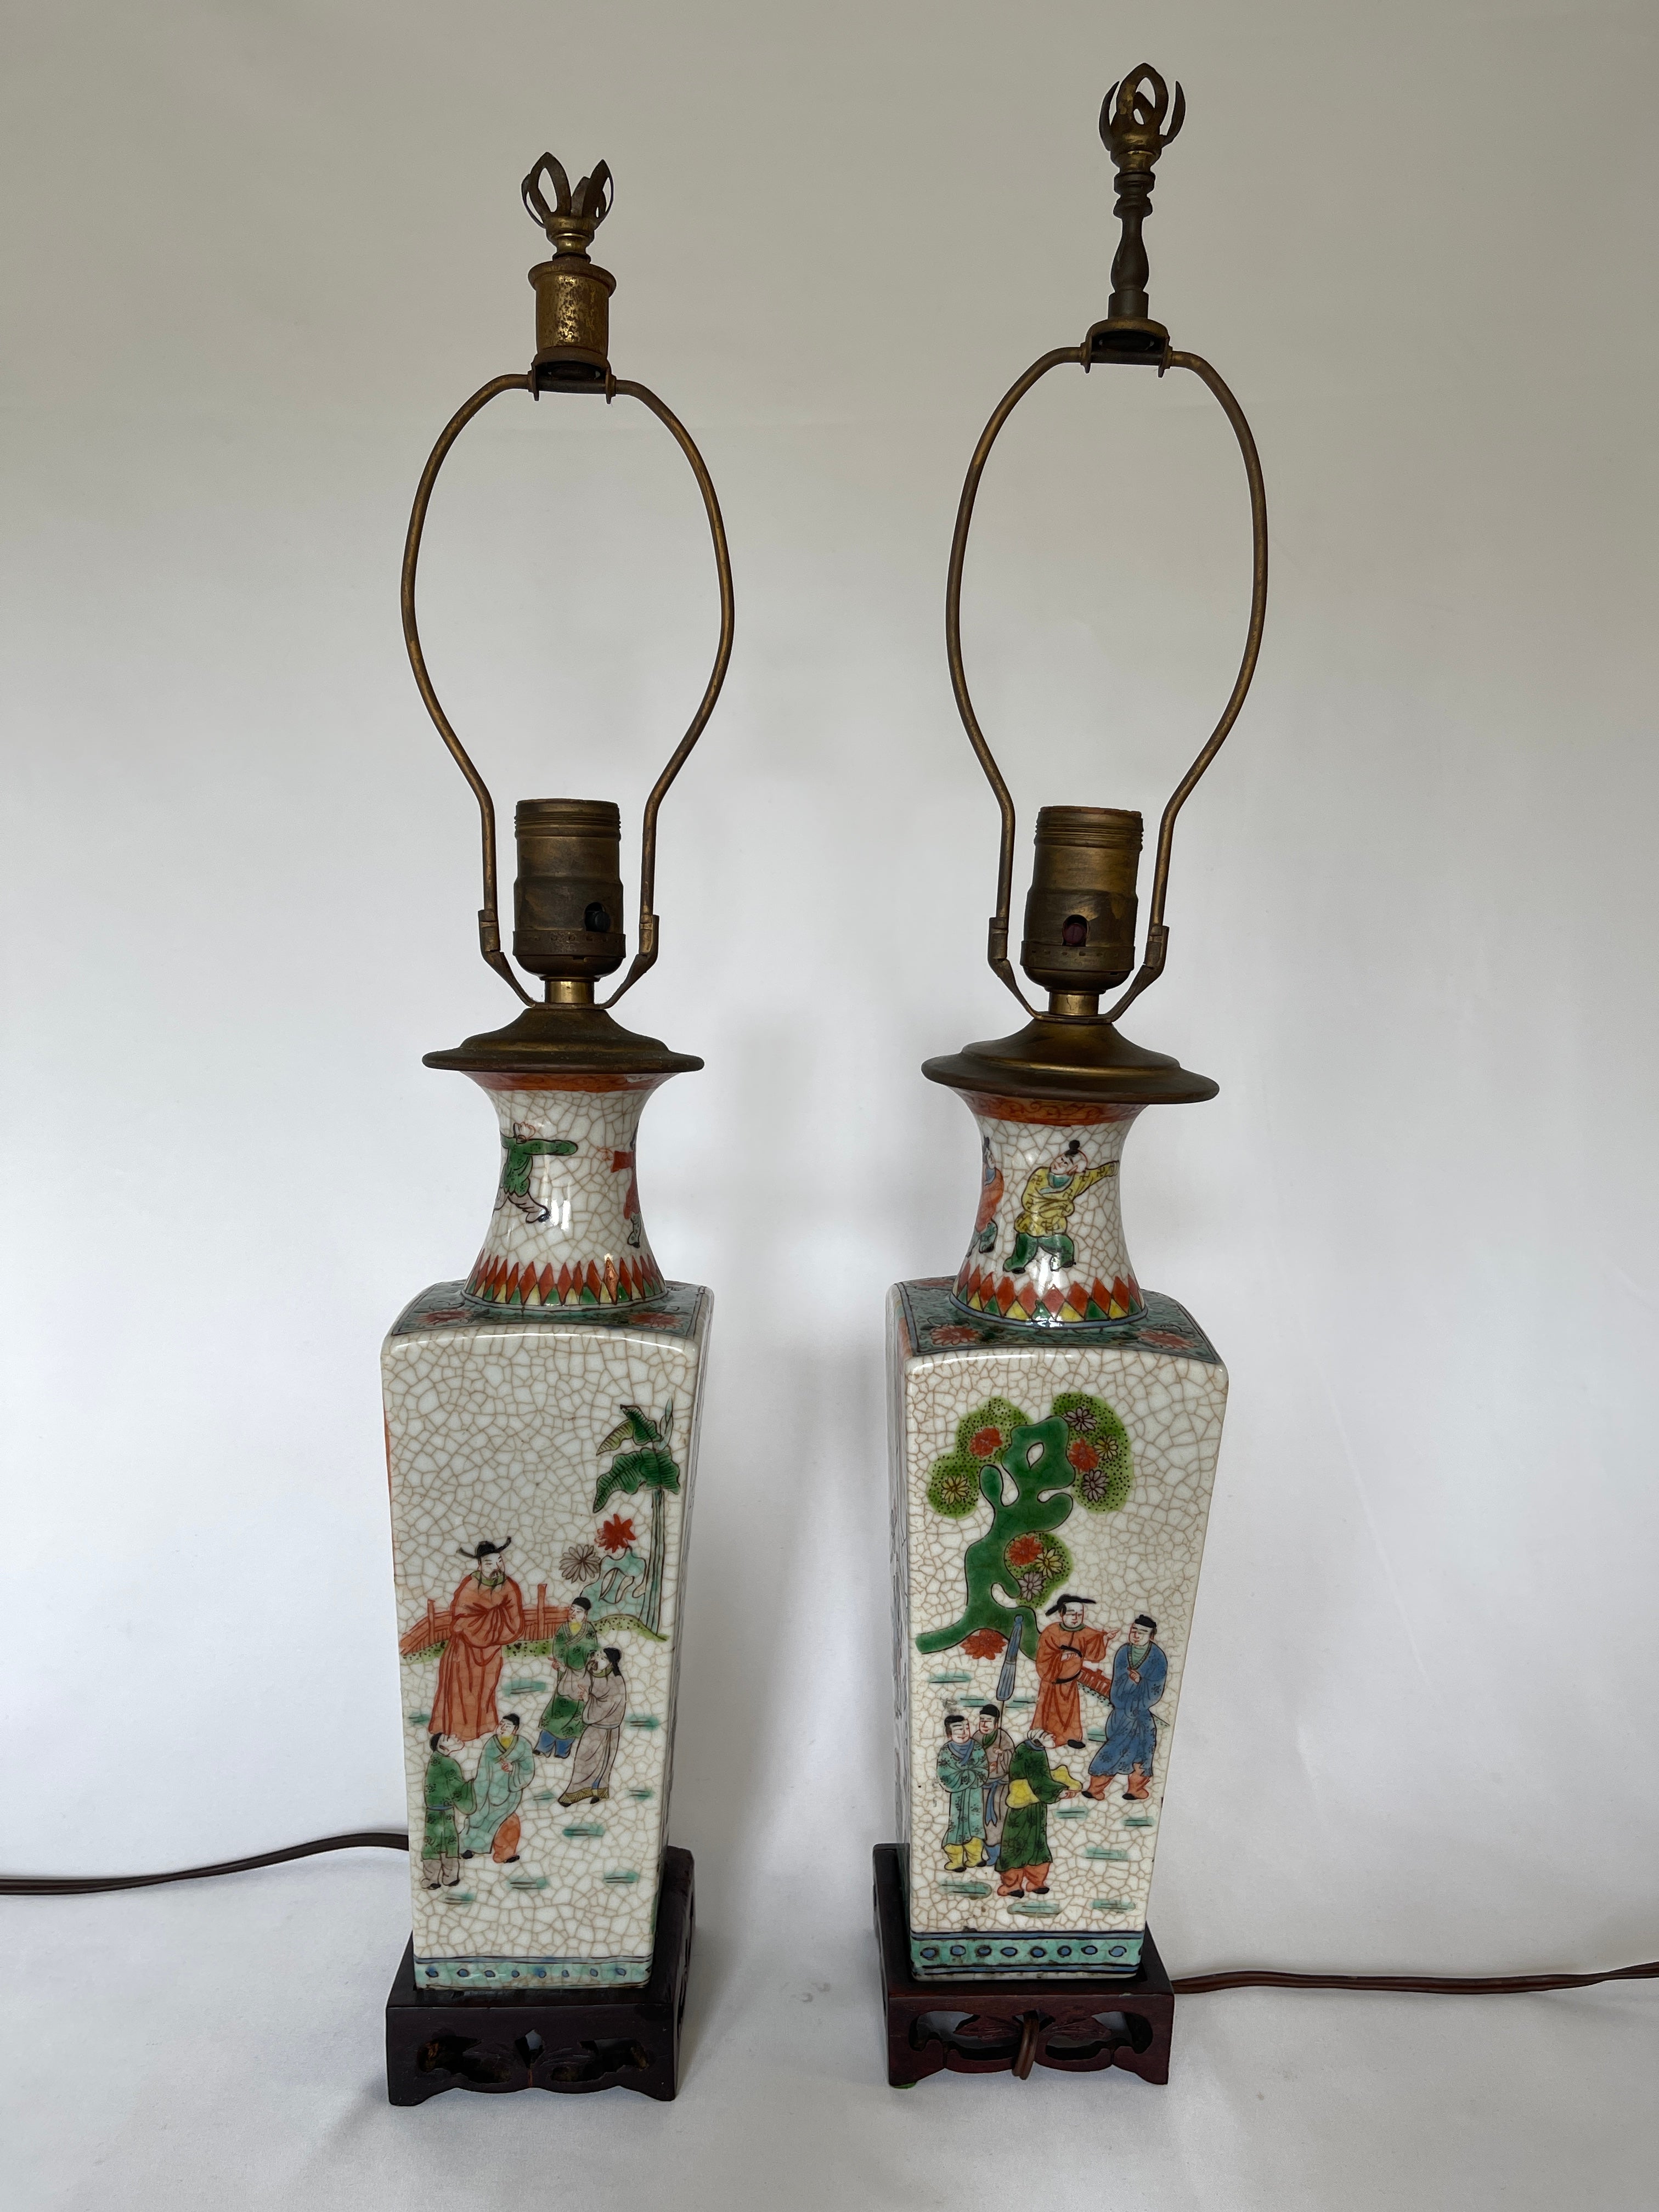 Paar chinesische Export-Vasenlampen aus dem 19. Jahrhundert auf geschnitzten quadratischen Hartholzsockeln. Sie sind vollständig von Hand dekoriert und unterscheiden sich alle leicht voneinander. 
Die Lampen haben noch die ursprüngliche Verkabelung